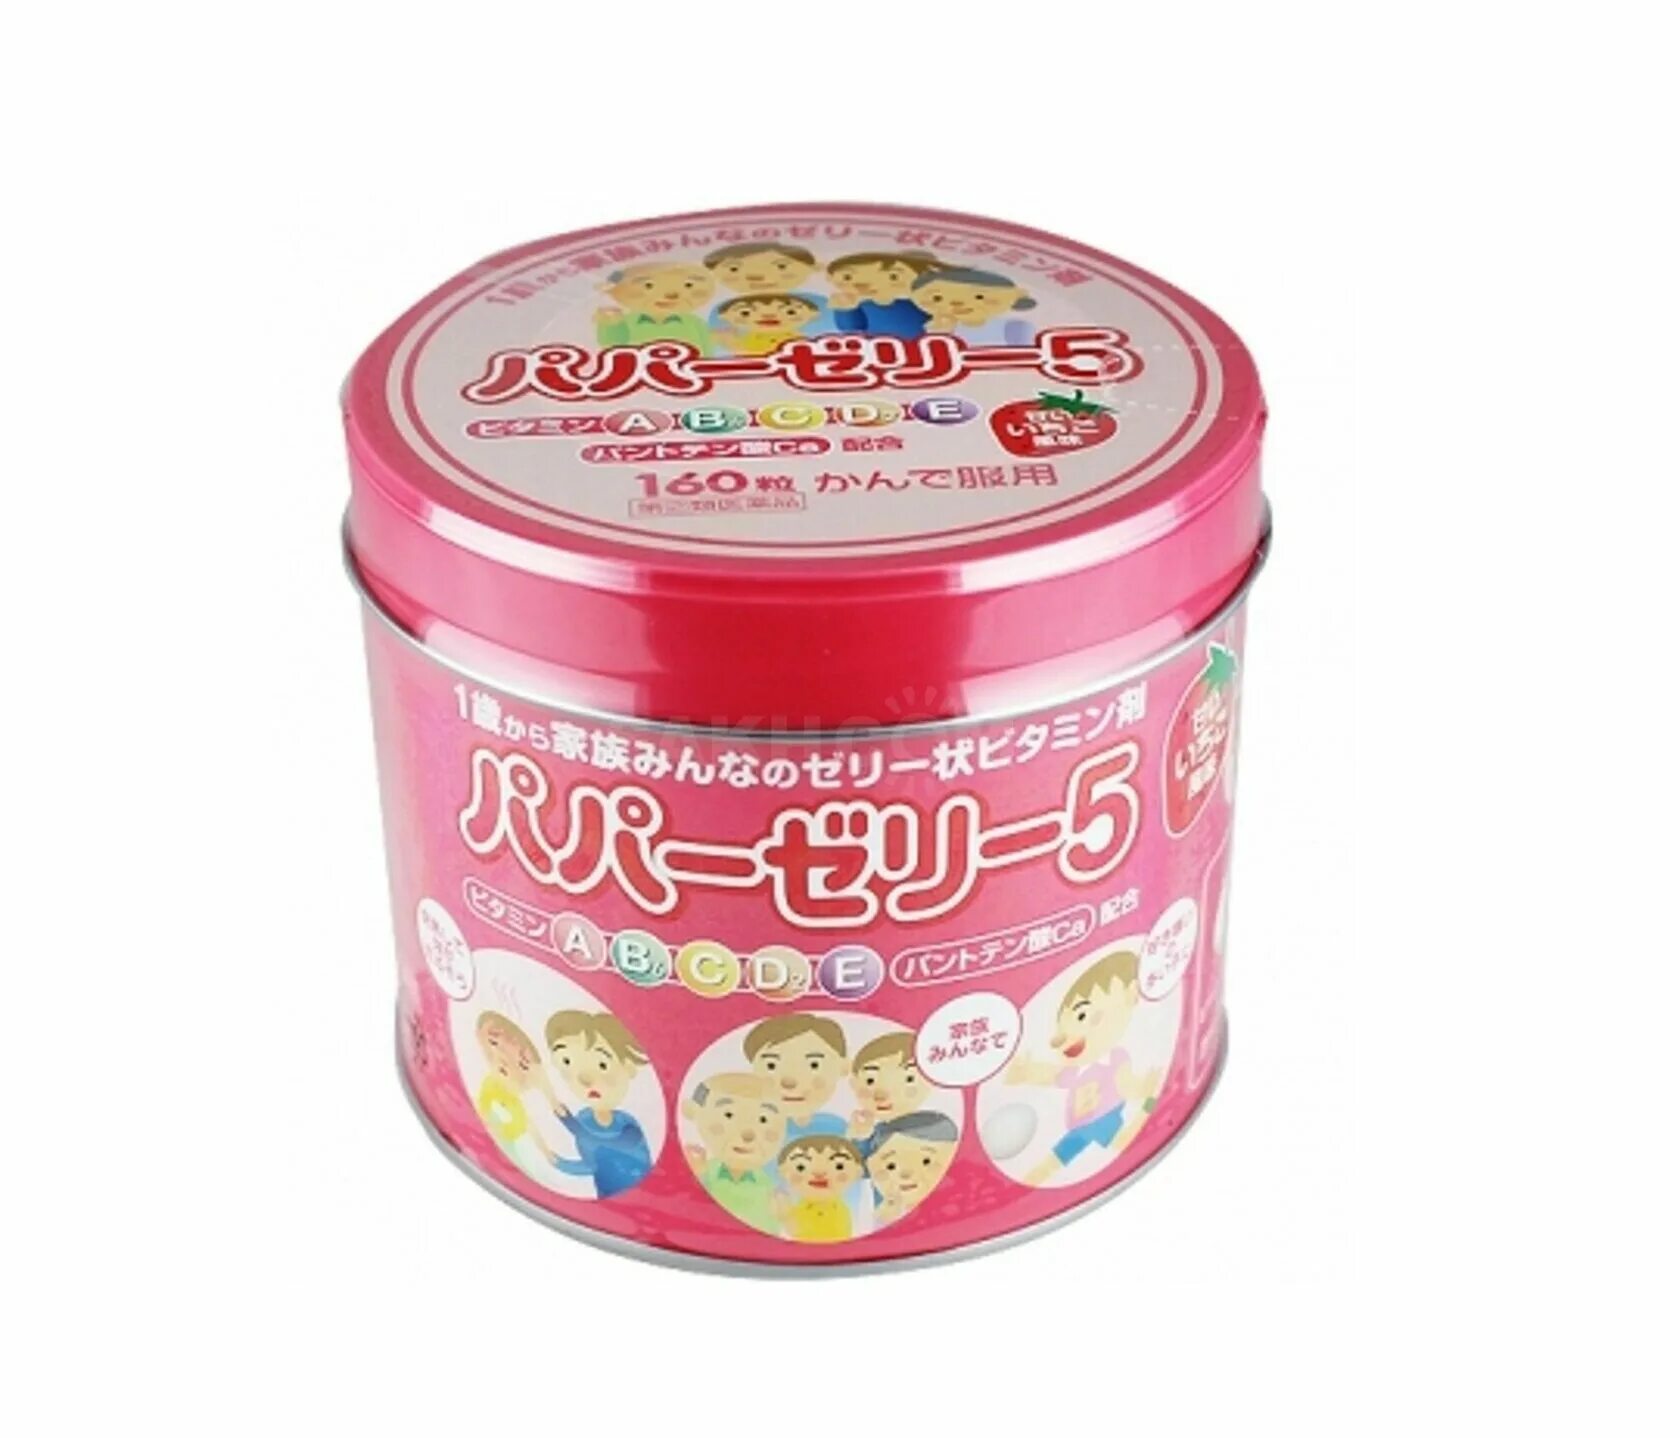 Японские витамины Papa Jelly. Японские детские витамины. Papa Jelly витамины для детей. Детские витамины клубника papajelly, 120 шт. Витамины желе